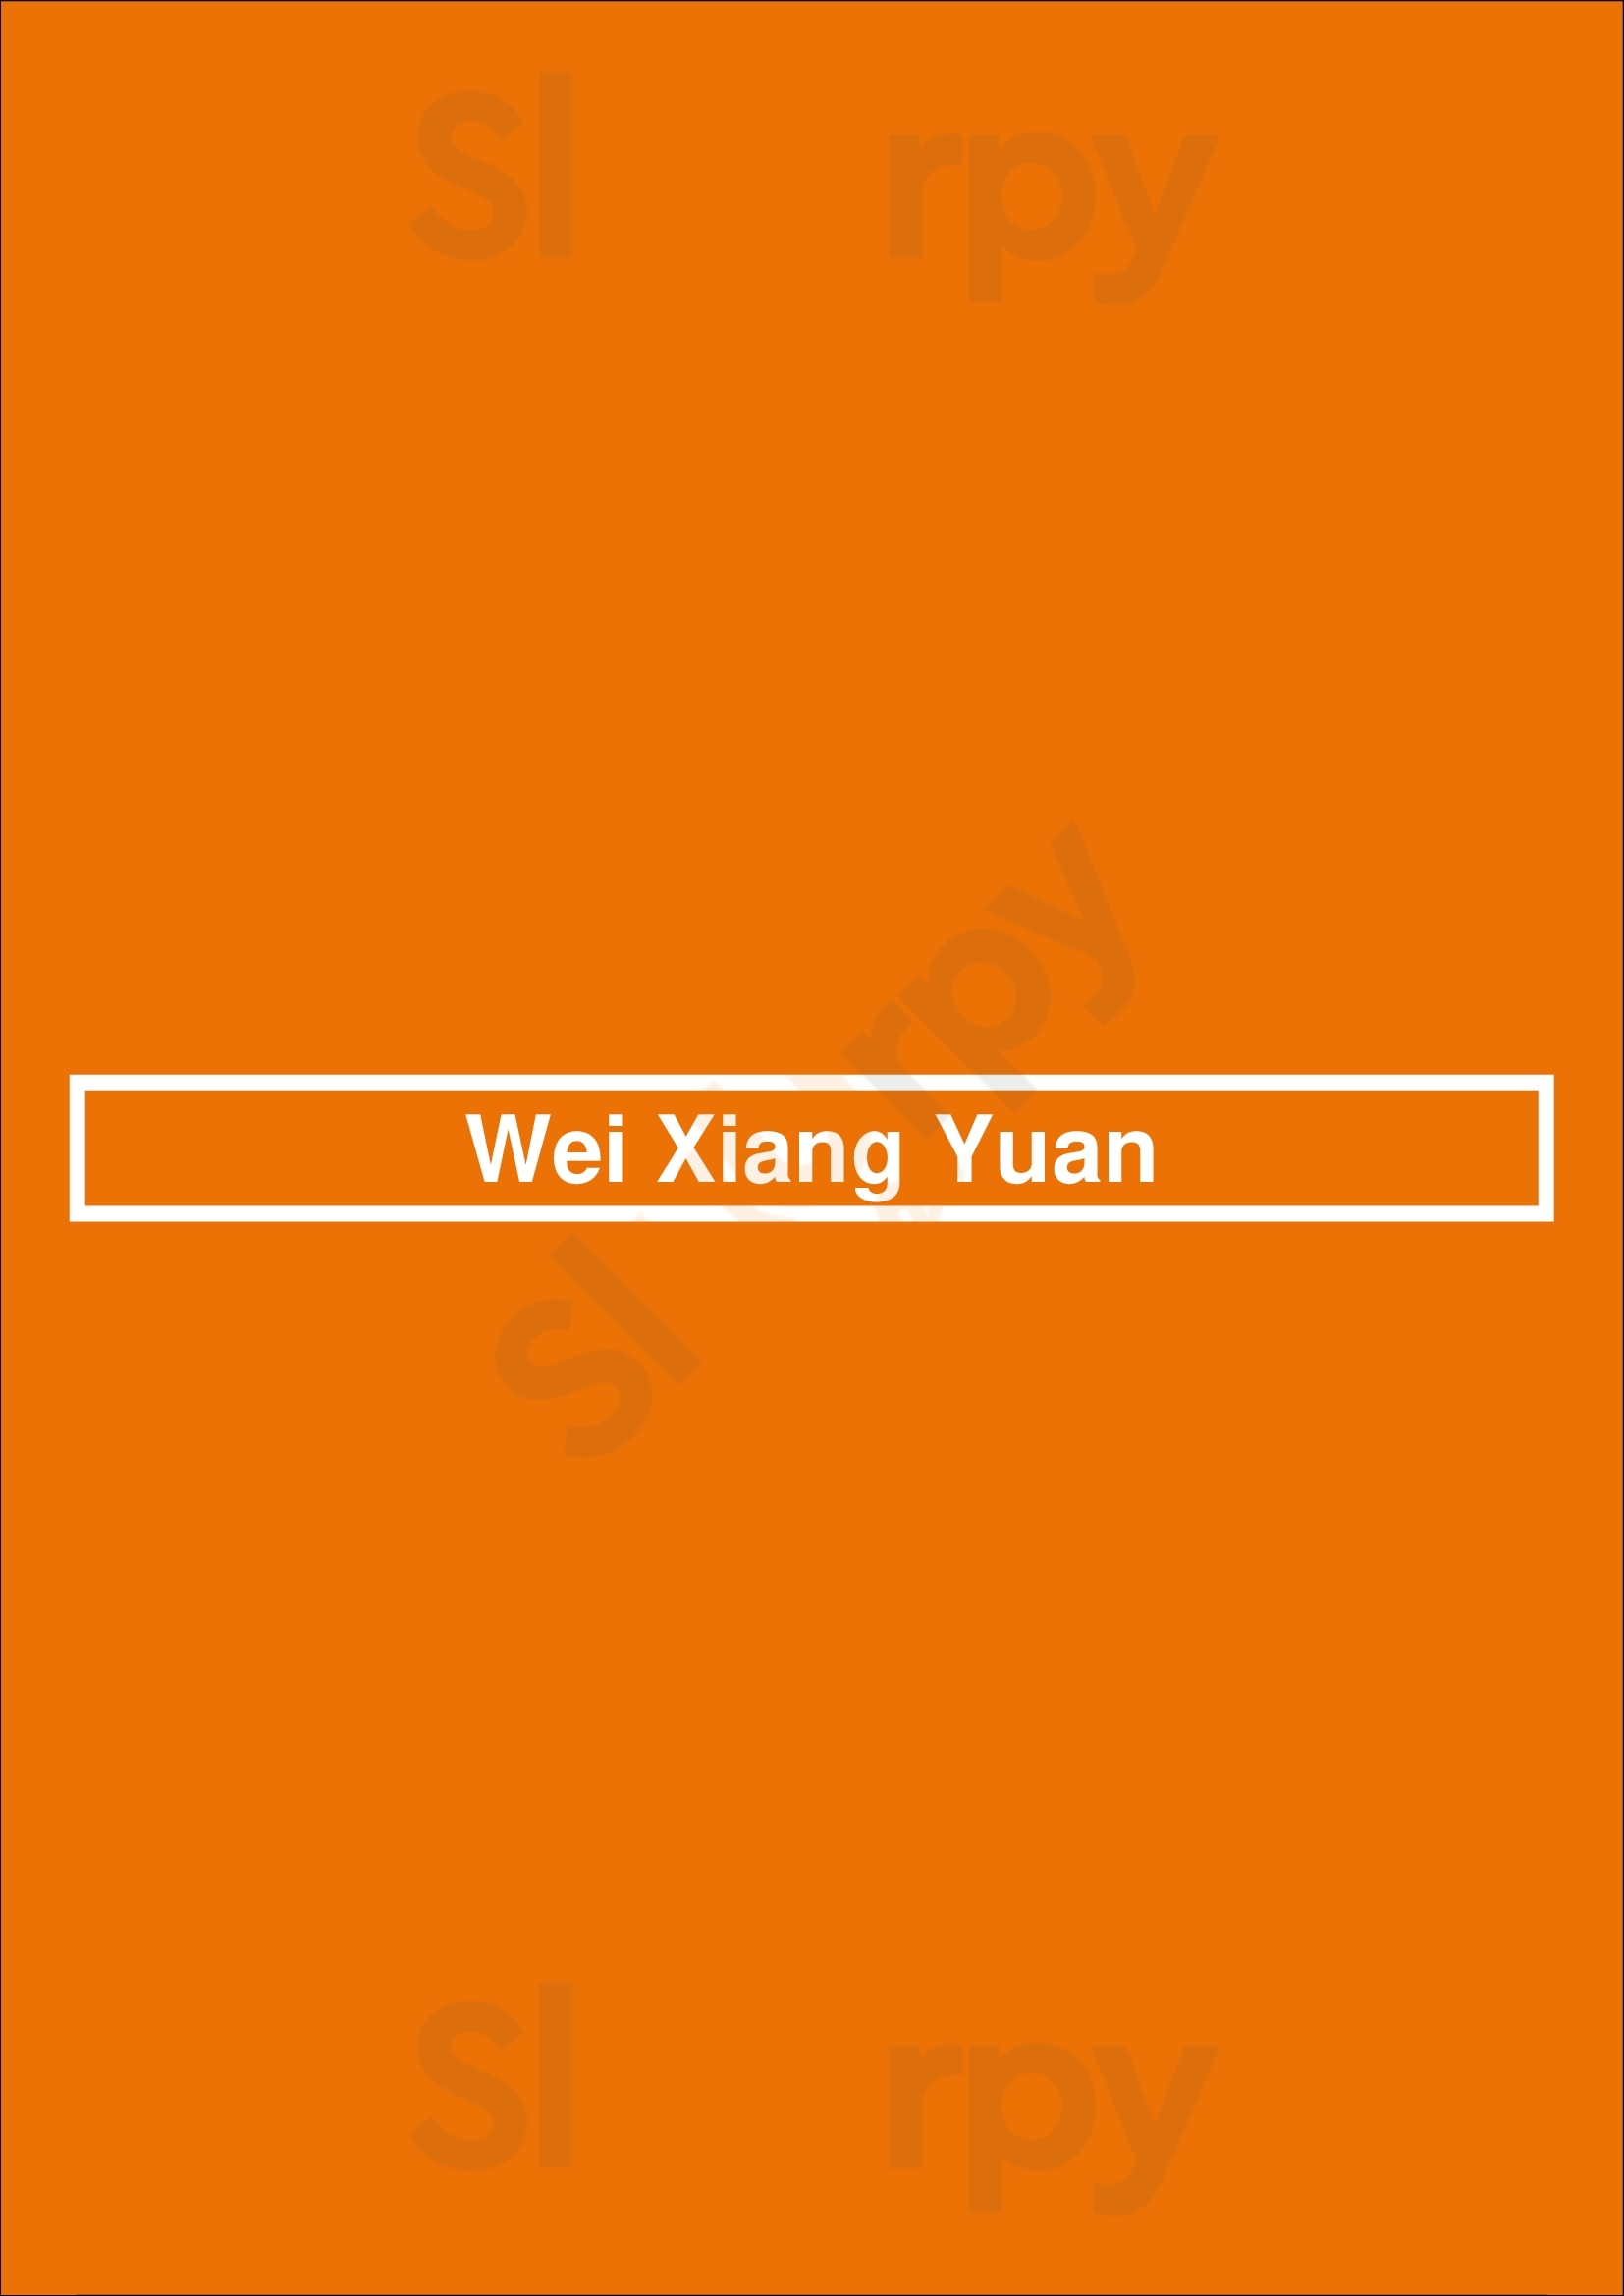 Wei Xiang Yuan Hamilton Menu - 1